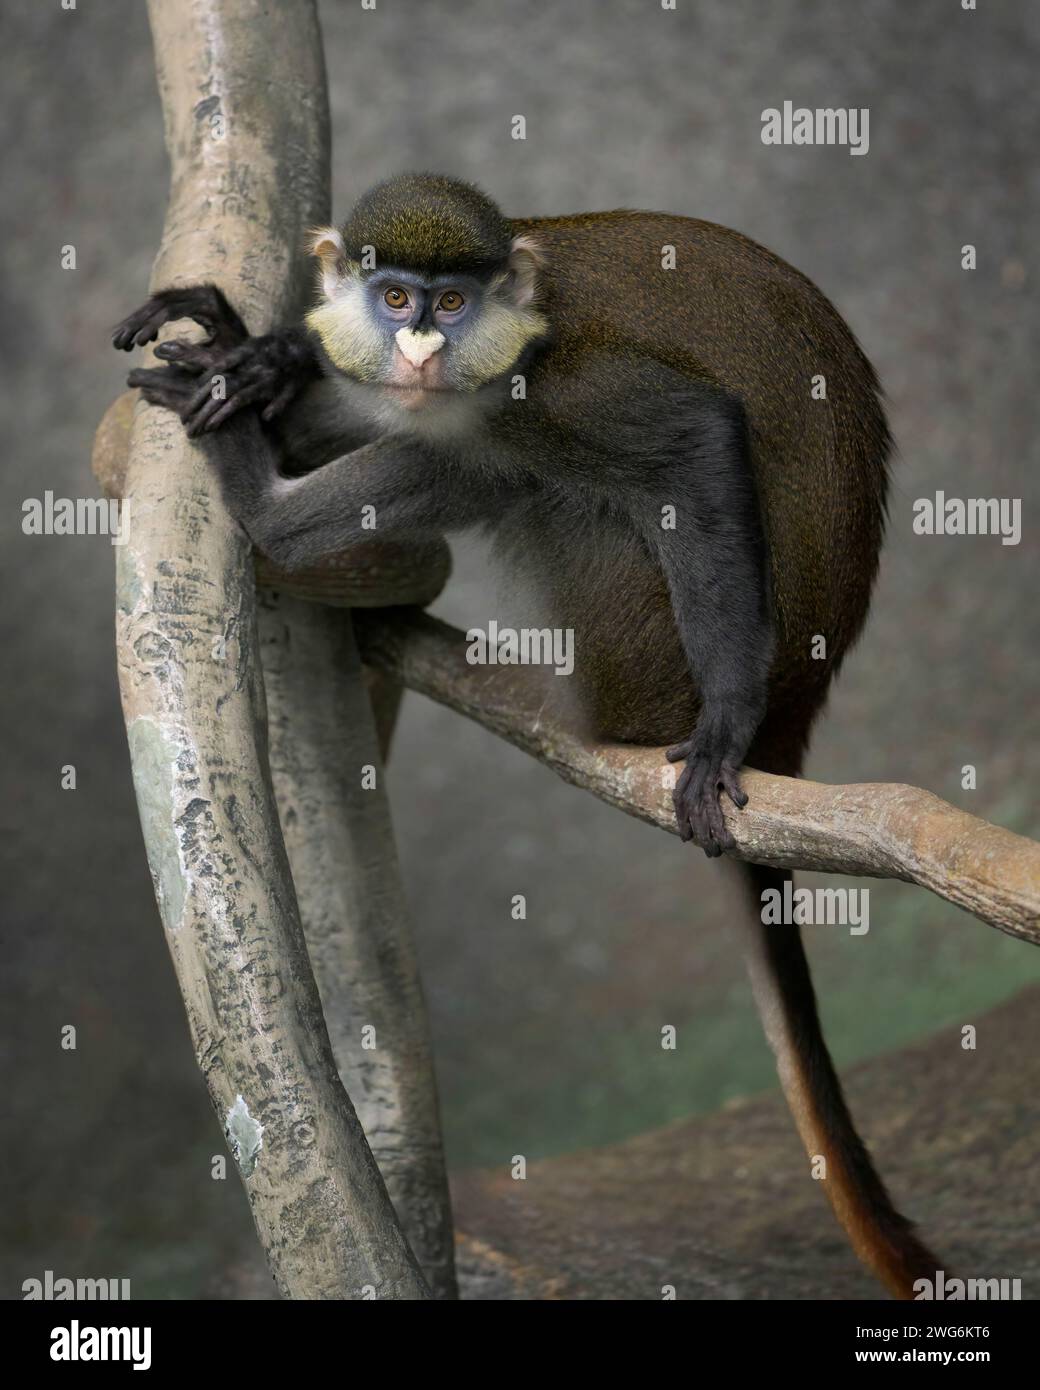 Schmidts Ganzkörperporträt Guenon (Cercopithecus ascanius schmidt) auf einem Baumzweig Stockfoto